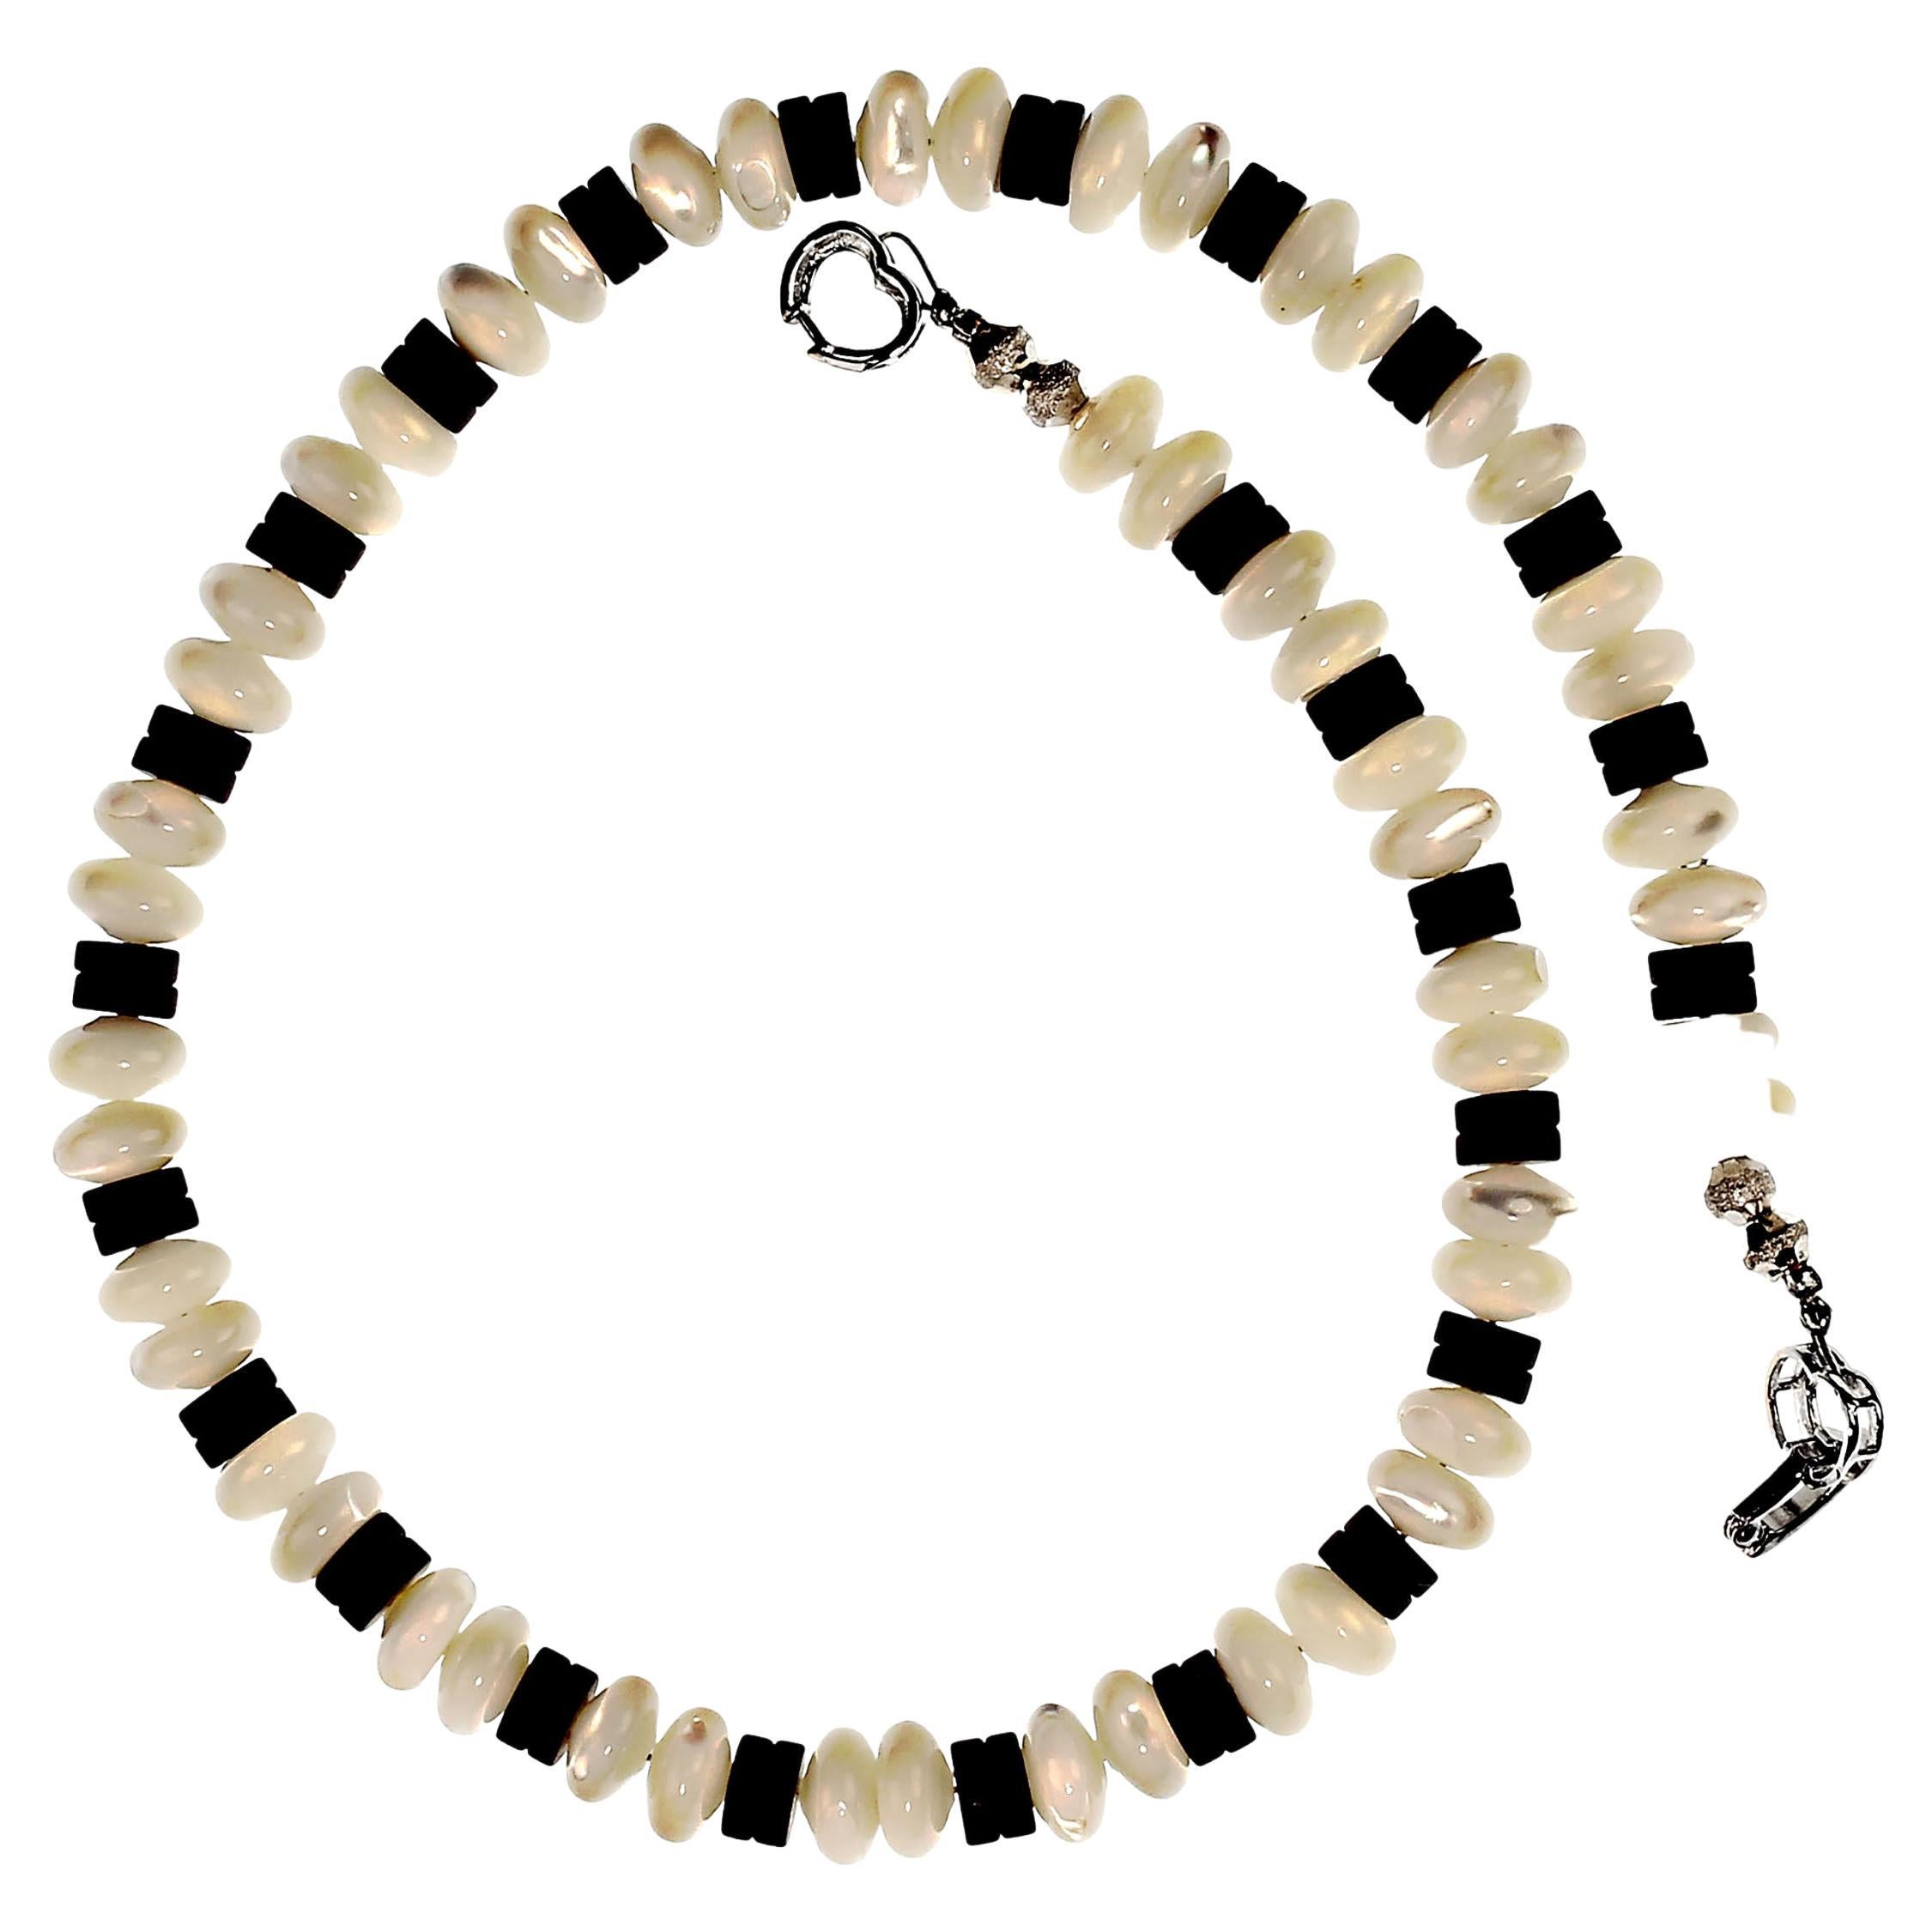 Handgefertigte Halskette aus Perlmutt und gefrostetem schwarzem Onyx.  Dieses einzigartige 15-Zoll-Kropfband zeichnet sich durch leuchtende, cremefarbene Rondellen aus Perlmutt mit kontrastierenden  Rondellen aus flachem schwarzem Onyx.  Dieses